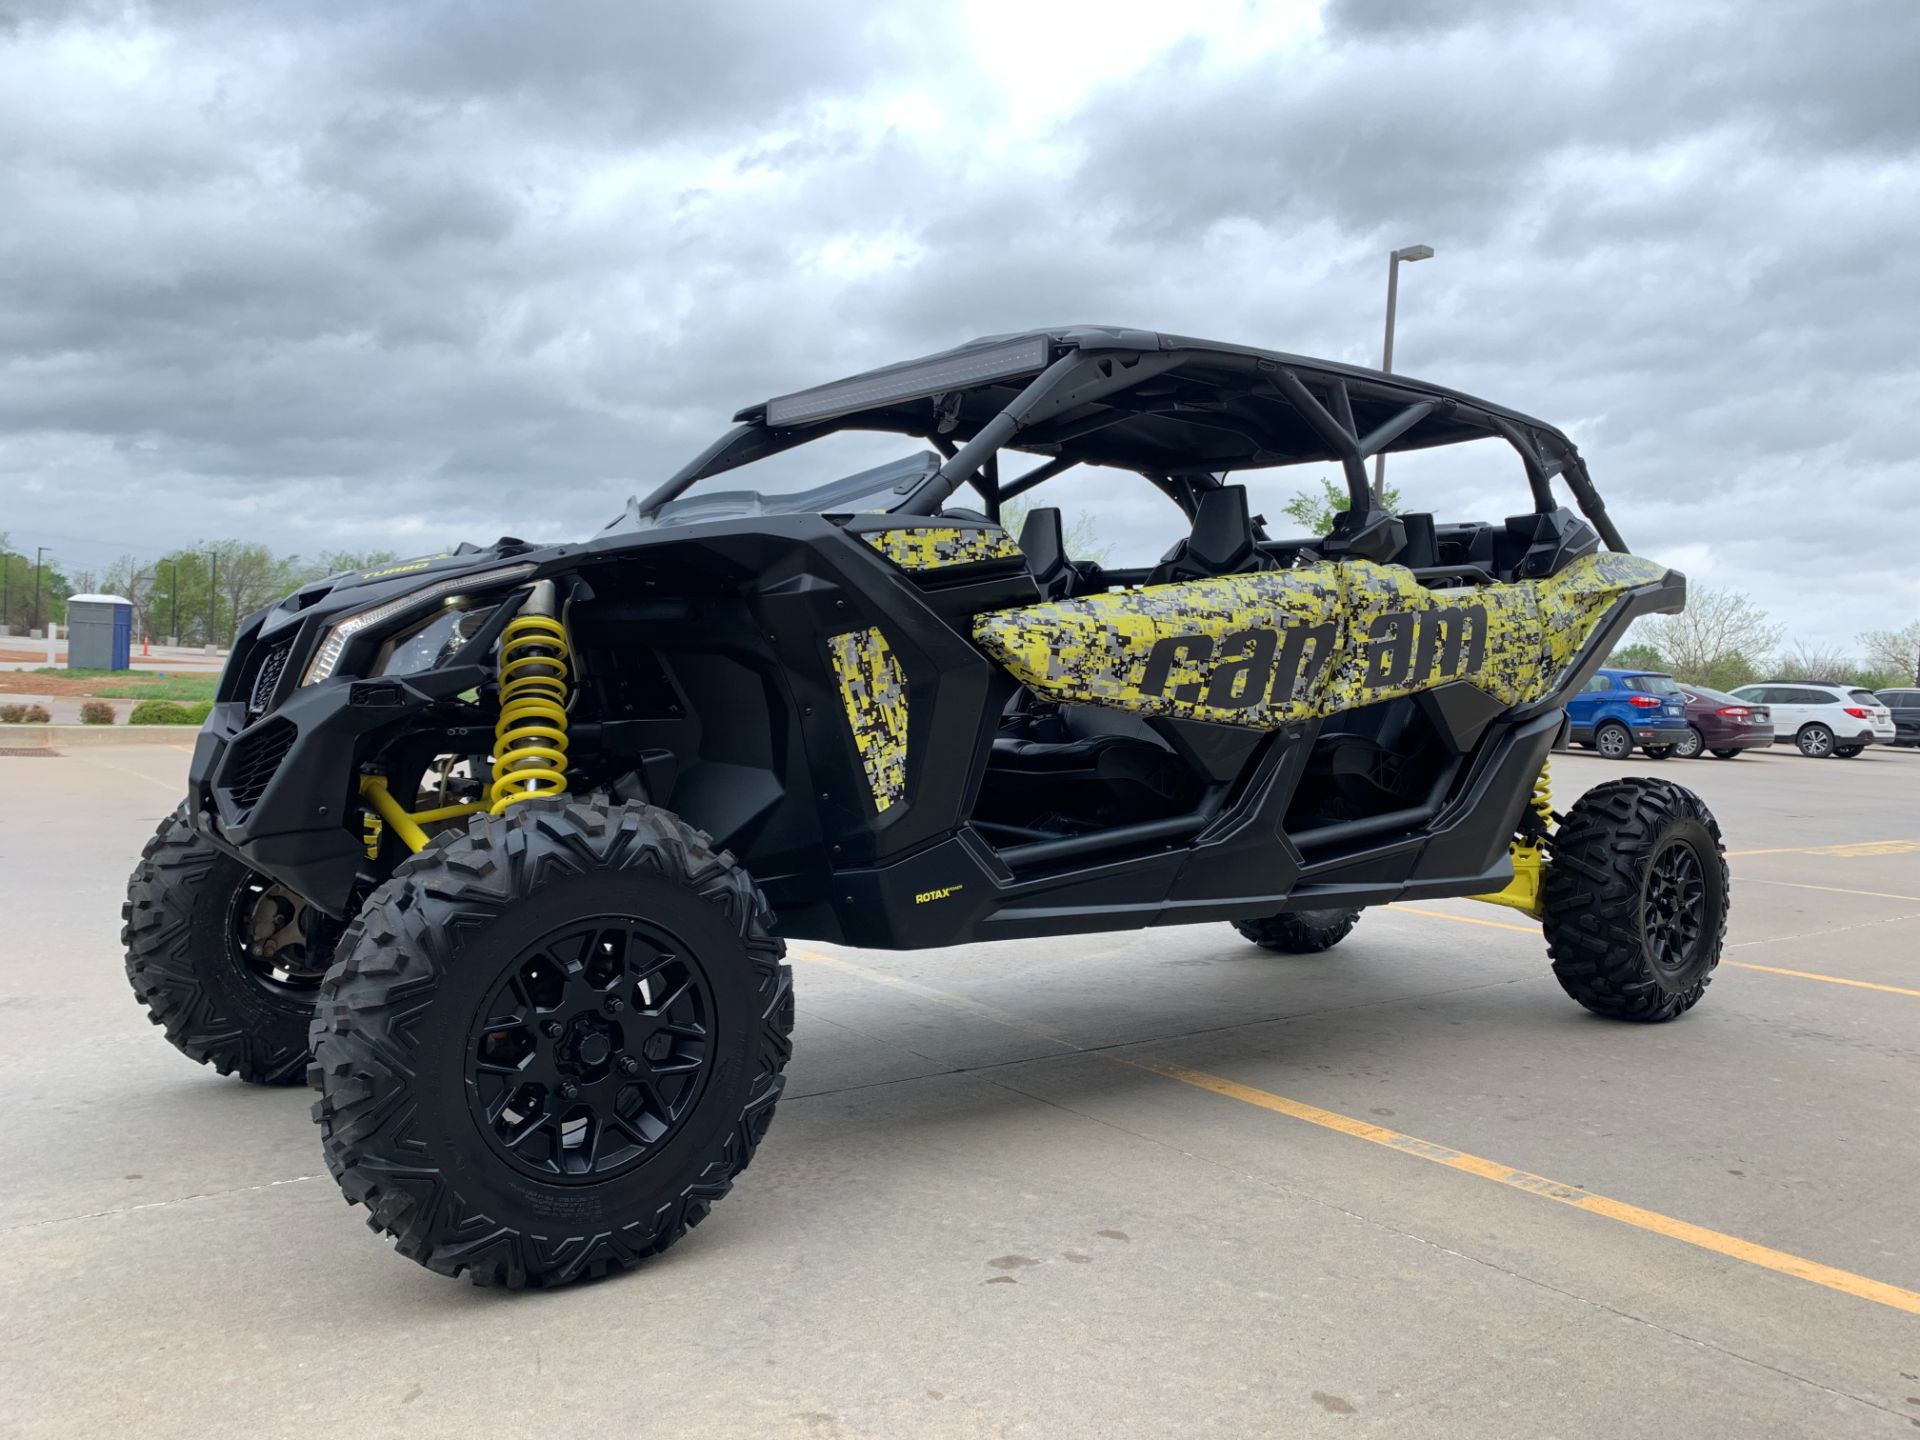 2019 Can-Am Maverick X3 Max Turbo in Norman, Oklahoma - Photo 6